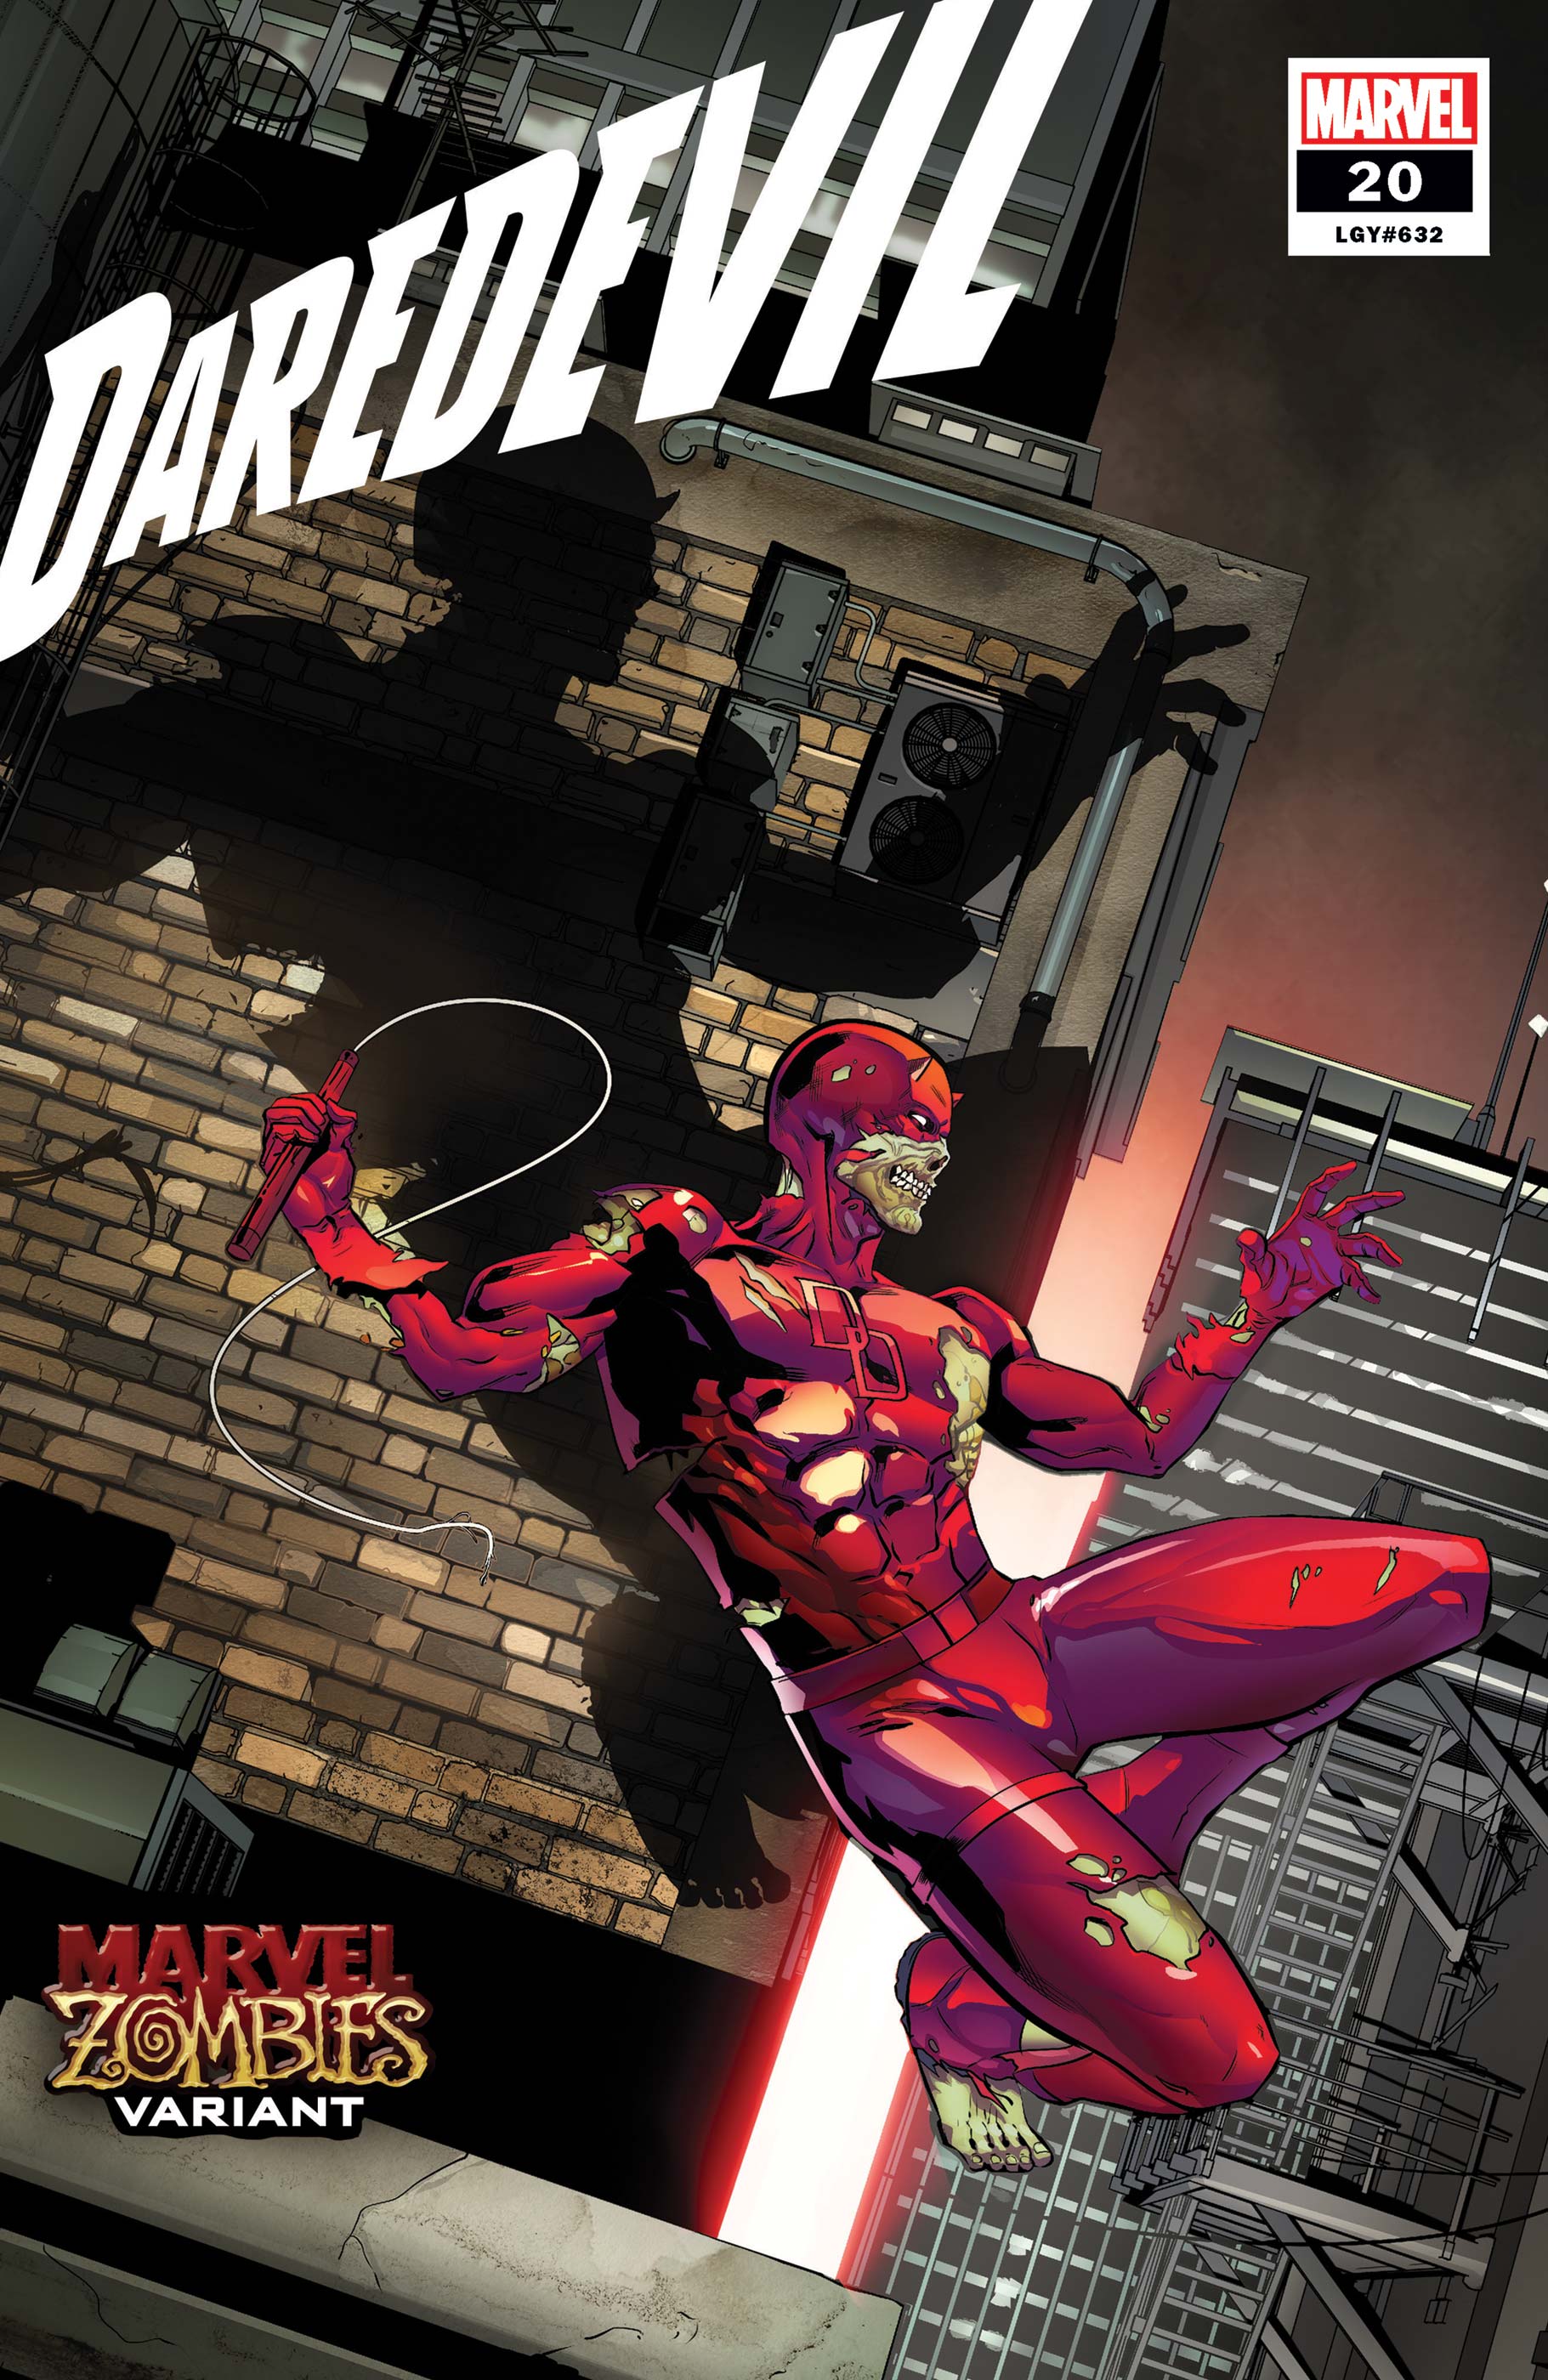 Daredevil (2019) #20 (Variant)